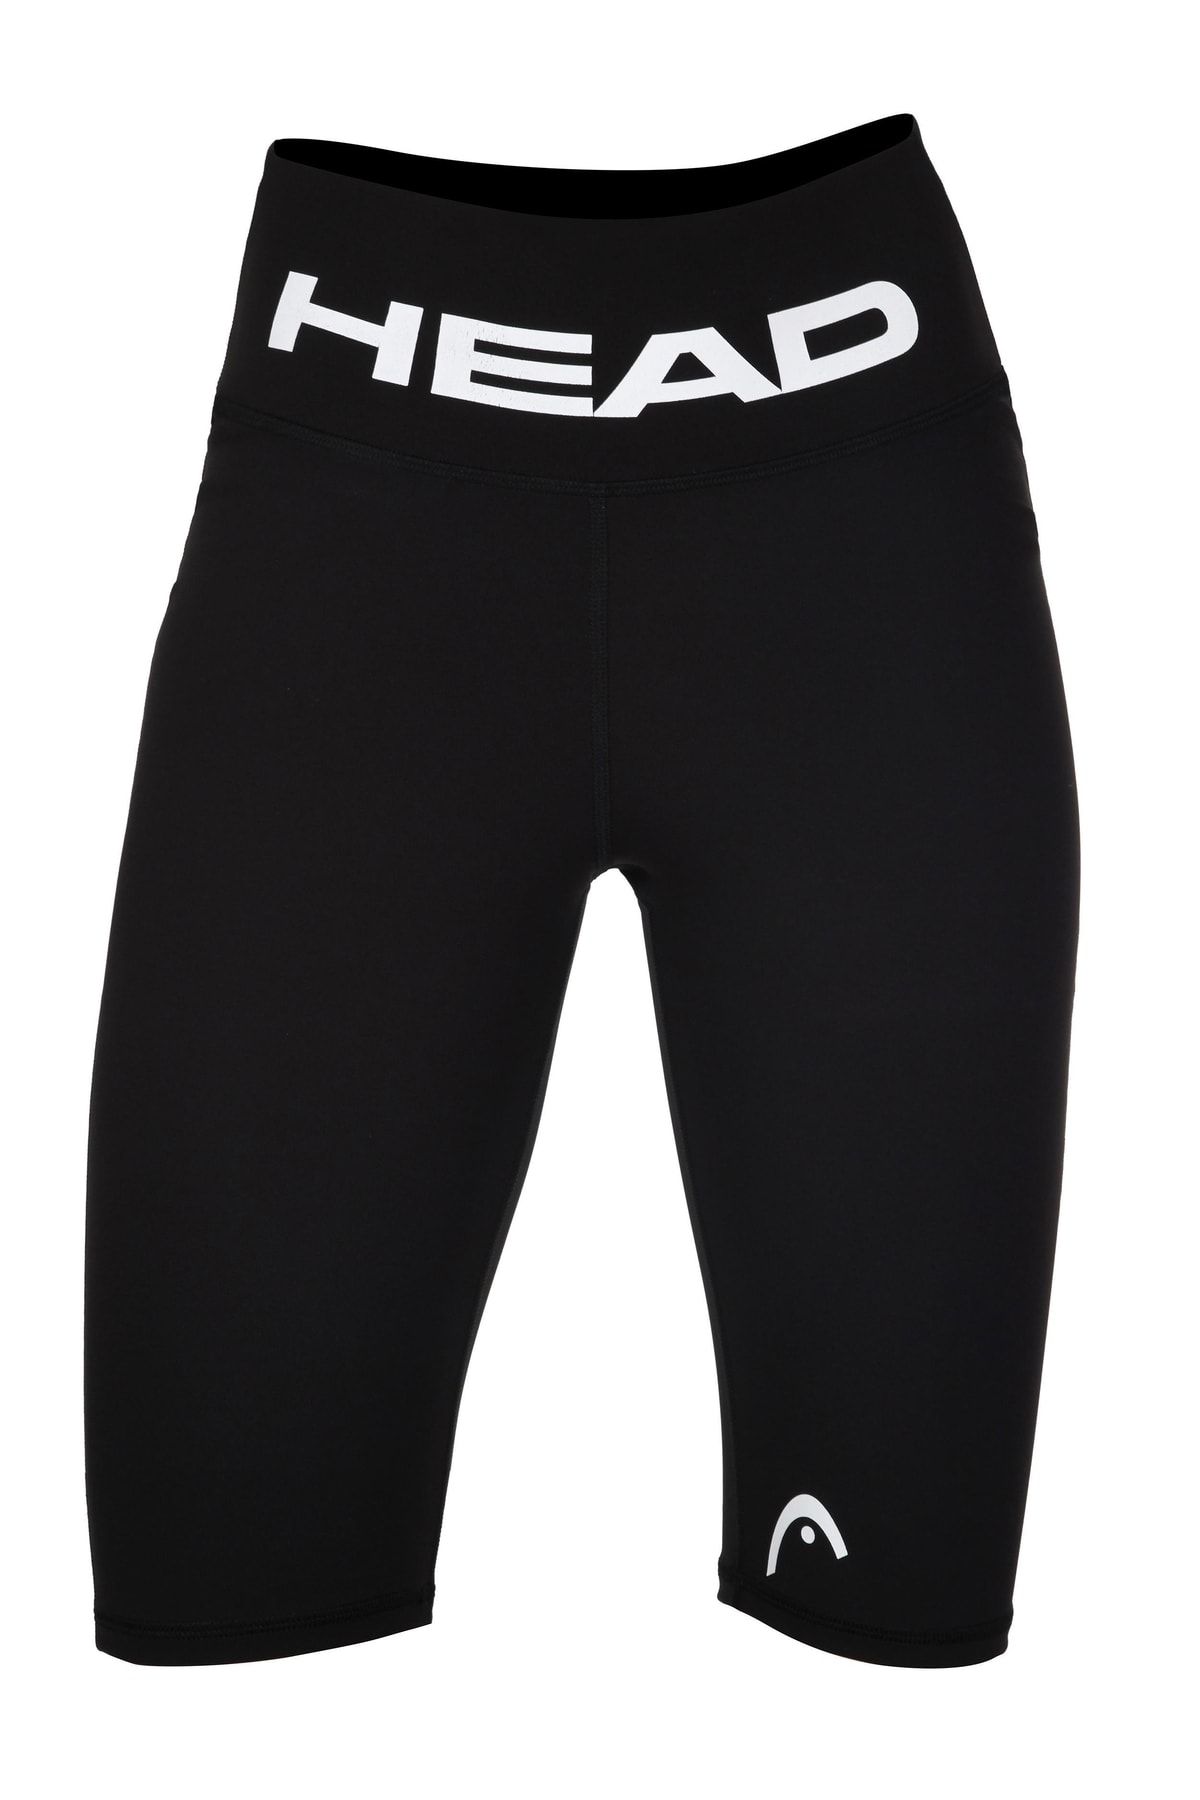 Head Kadın Beyaz - Siyah Logo Baskı Yüksek Bel Comfort Esnek Toparlayıcı Sporcu Diz Üstü Biker Tayt